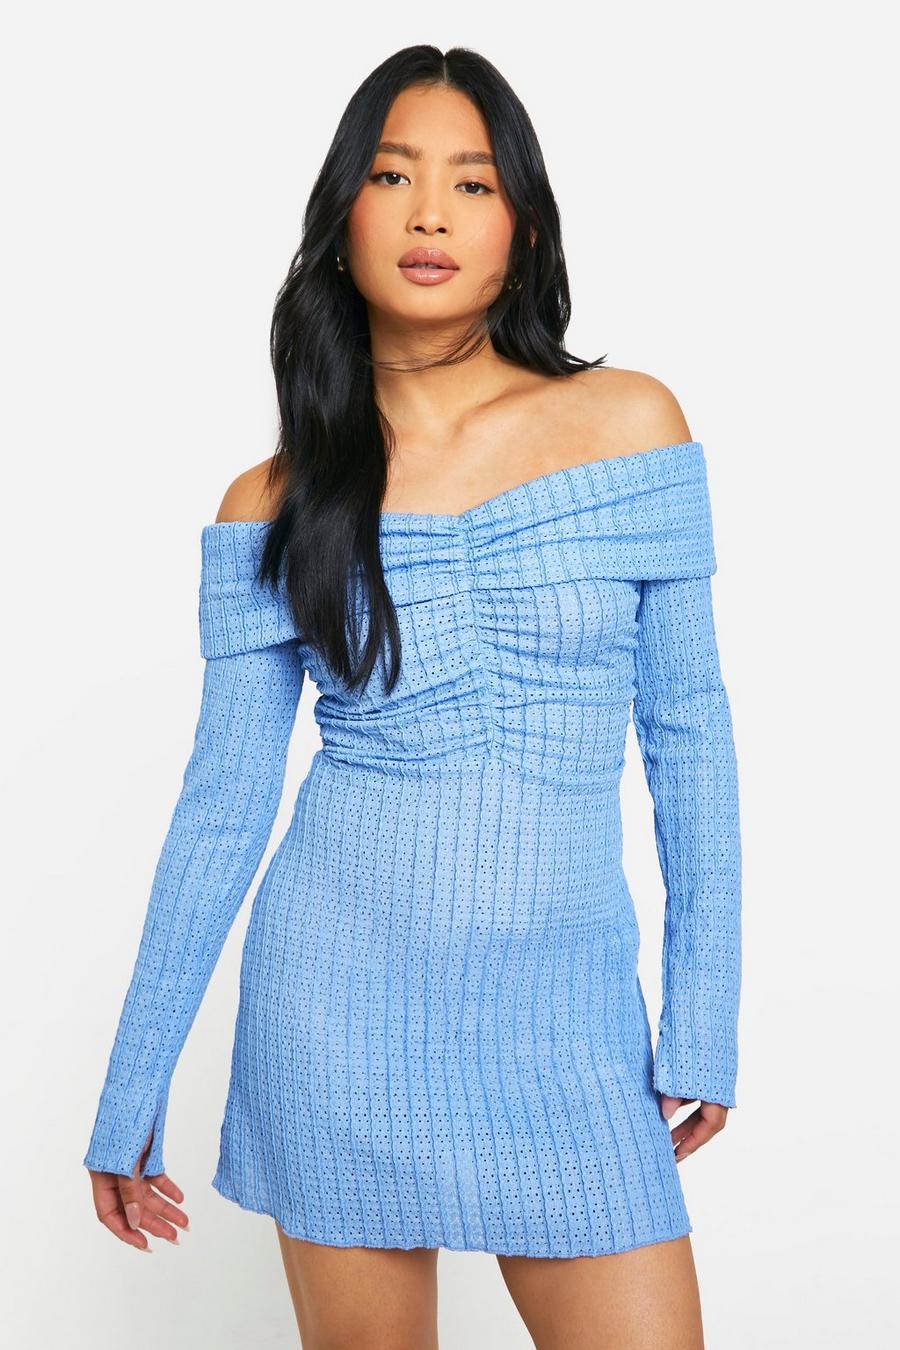 Blue Petite Textured Bardot Mini Dress